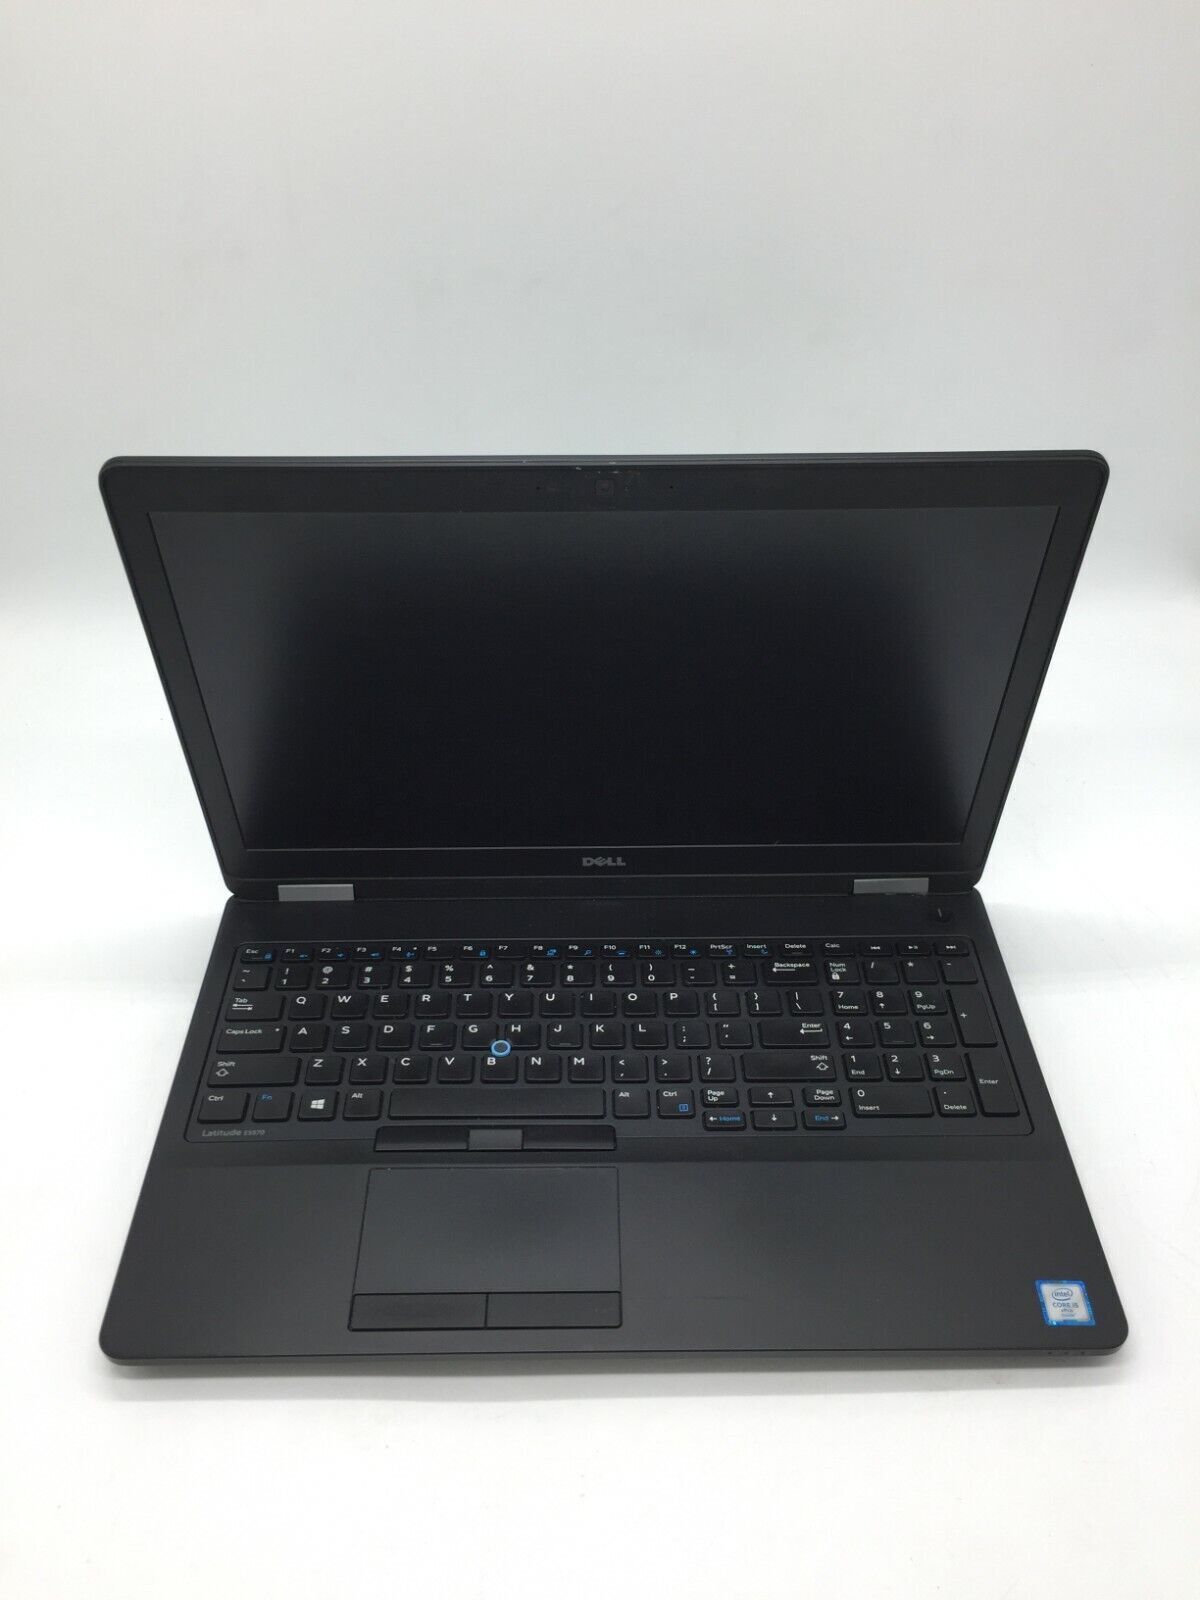 Dell Latitude E5570 16GB 512GB SSD Windows 10 Pro Laptop Computer Core I5-6300u